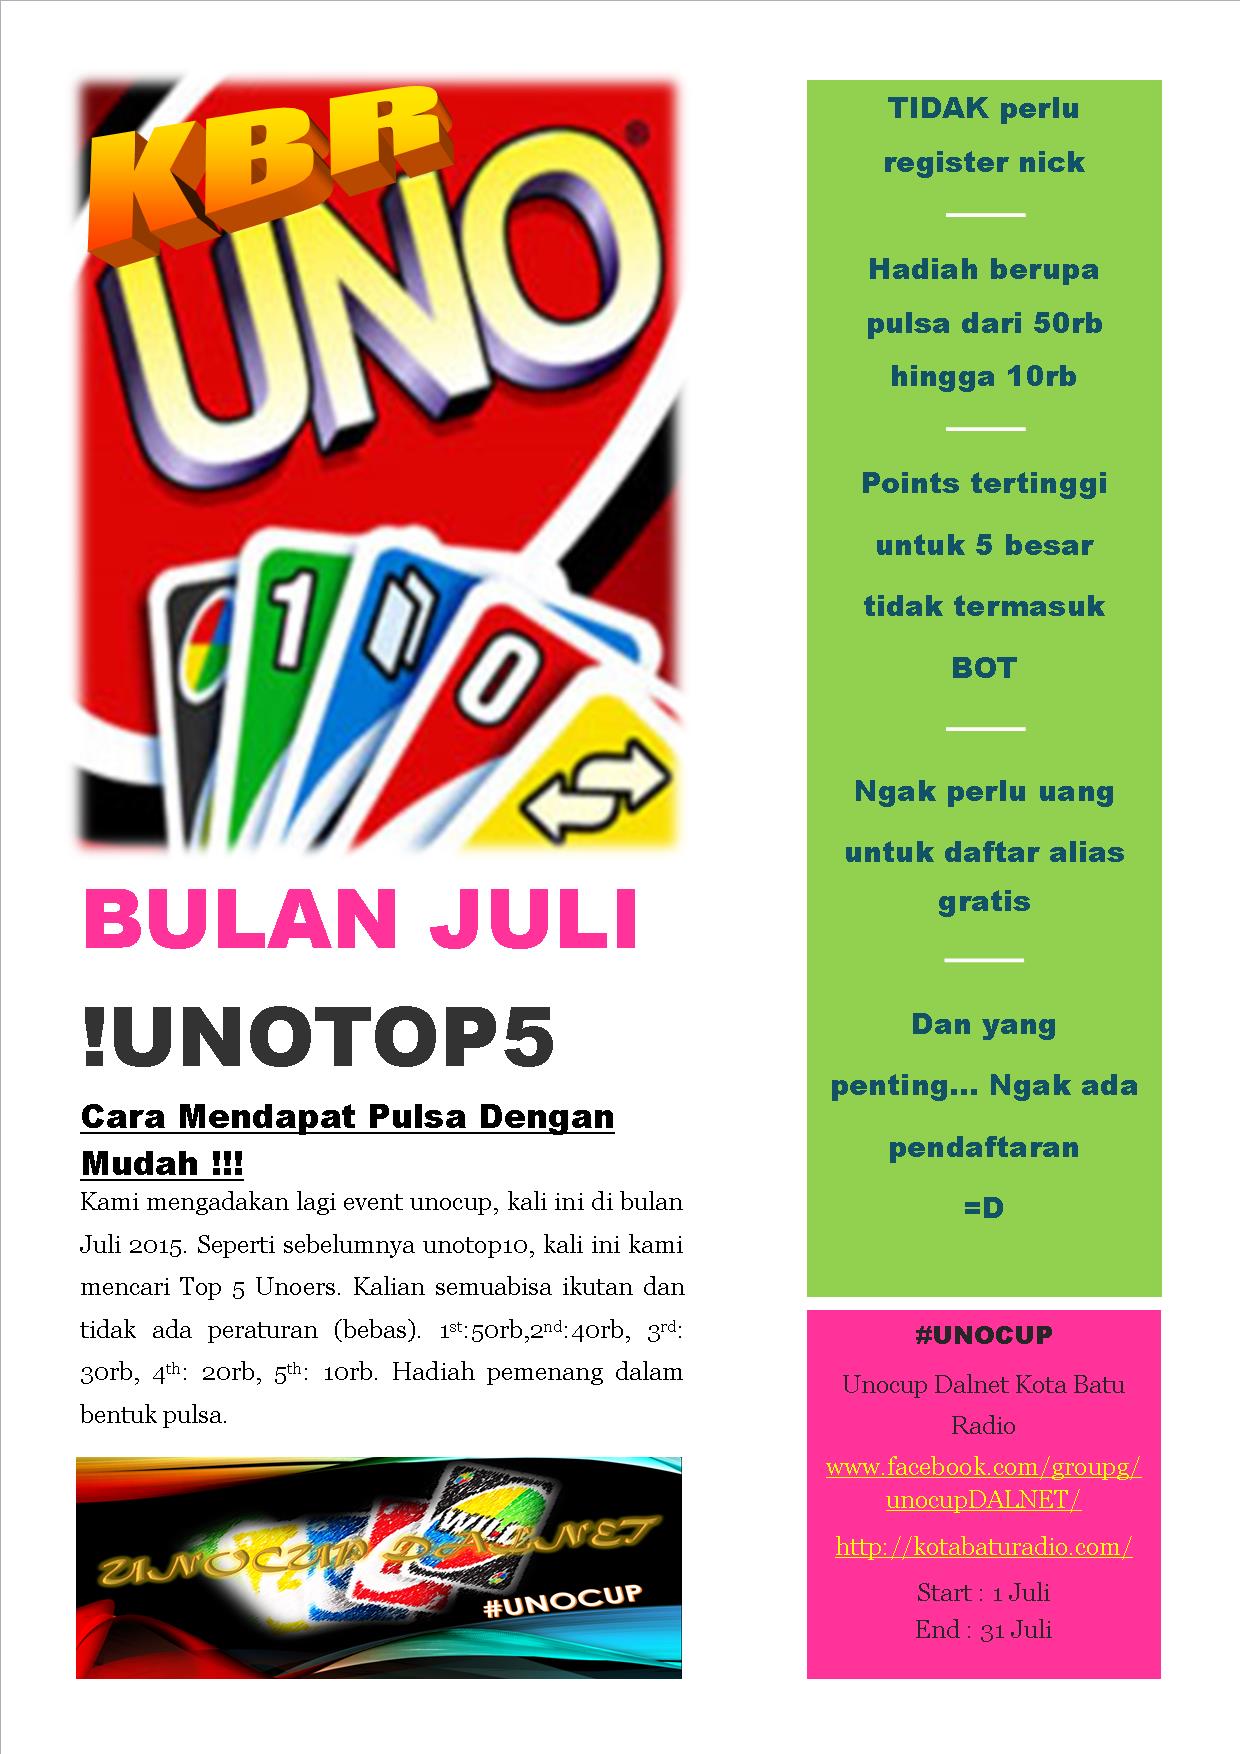 july event - unocup kbr